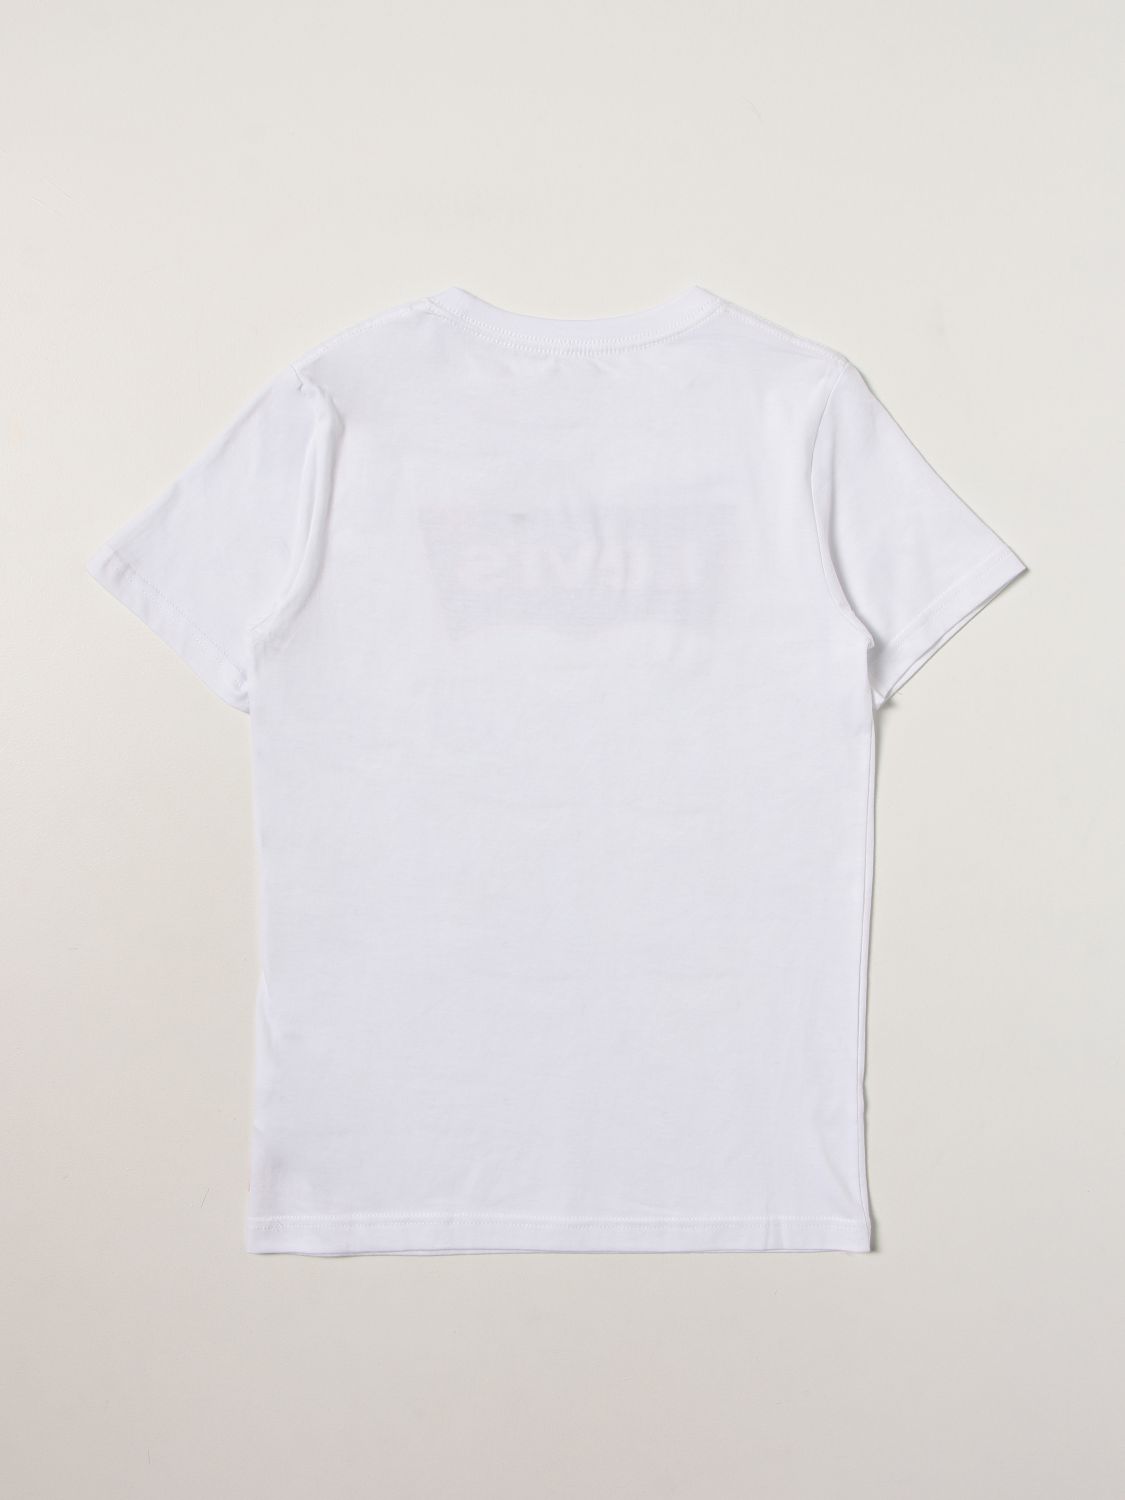 T-Shirt Levi's: T-shirt kinder Levi's weiß 2